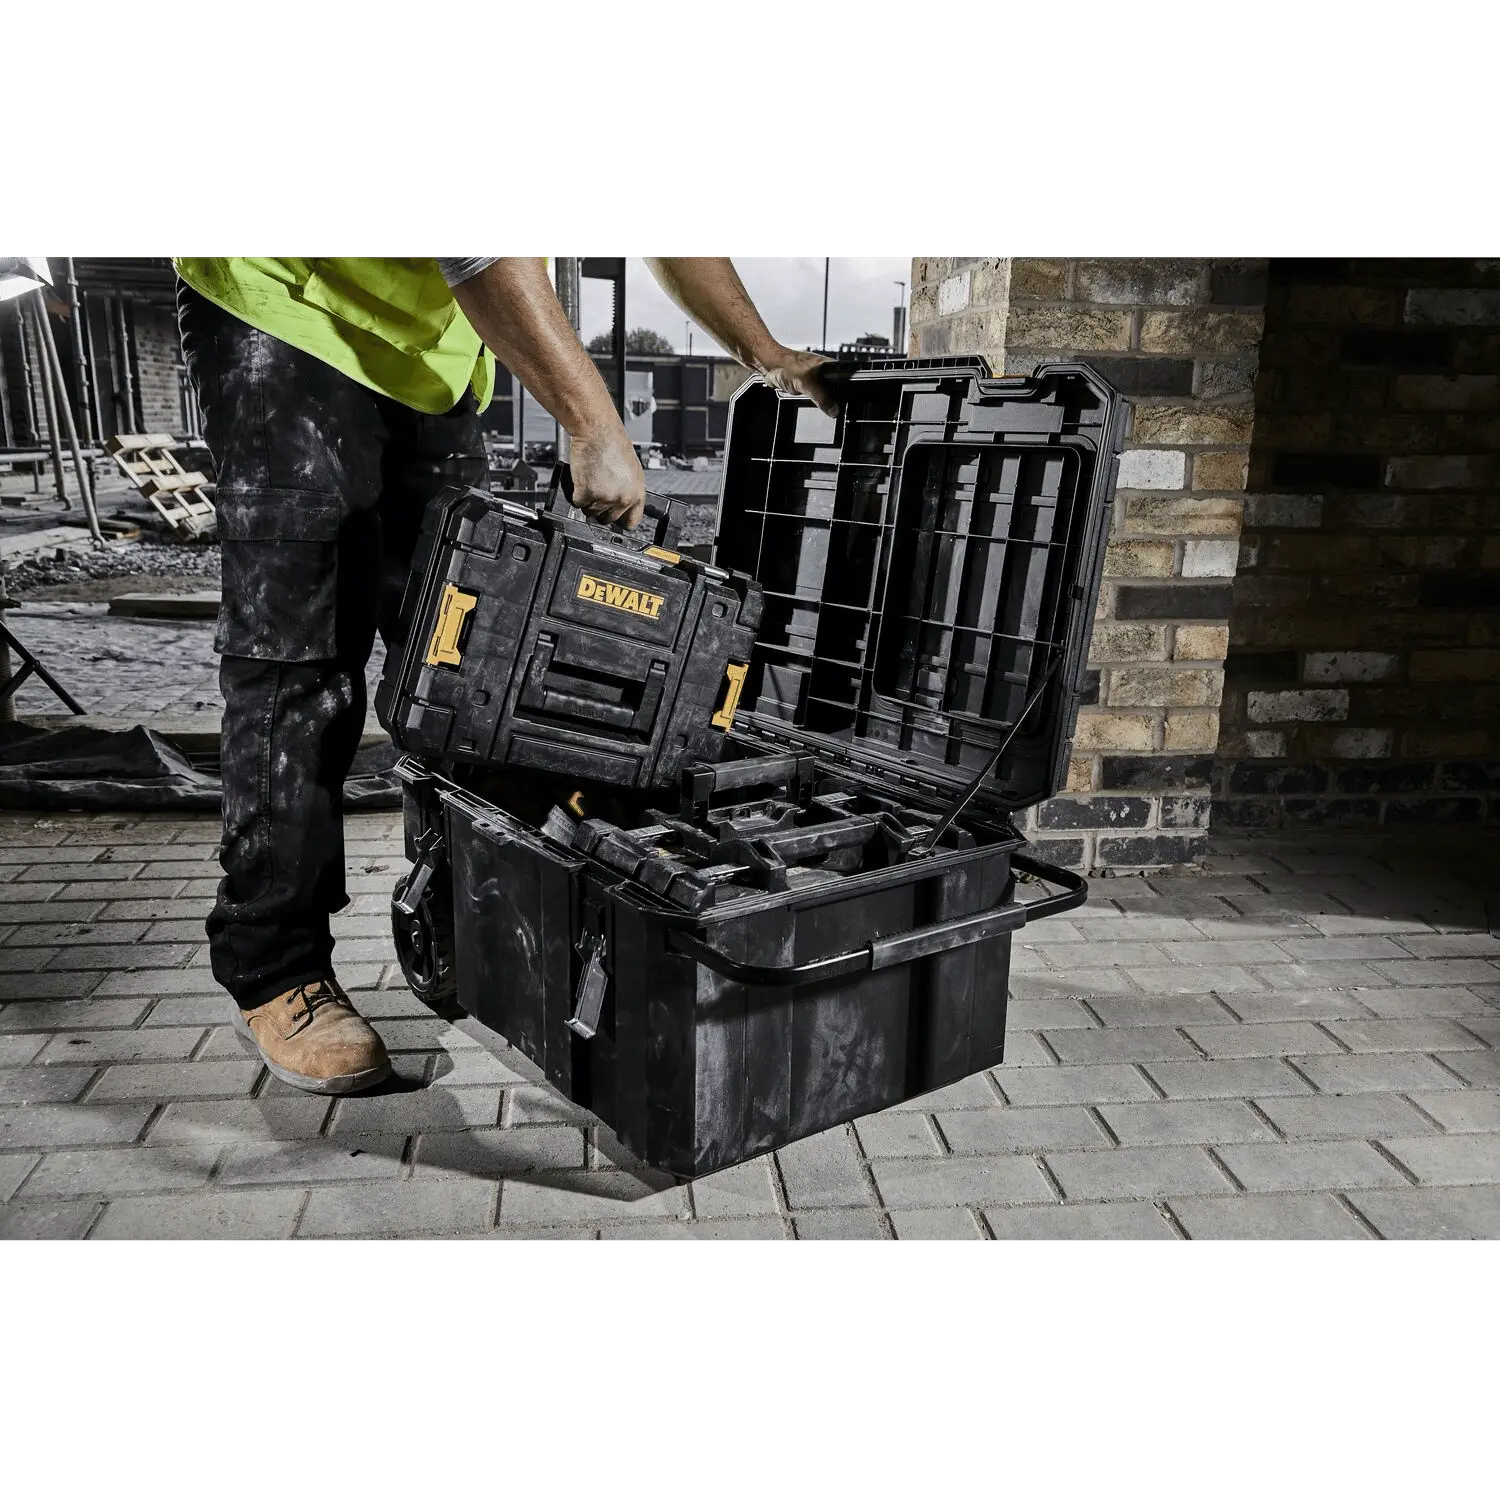 DEWALT TSTAK gereedschapskoffer: robuust, opbergruimte, eenvoudig te transporteren.